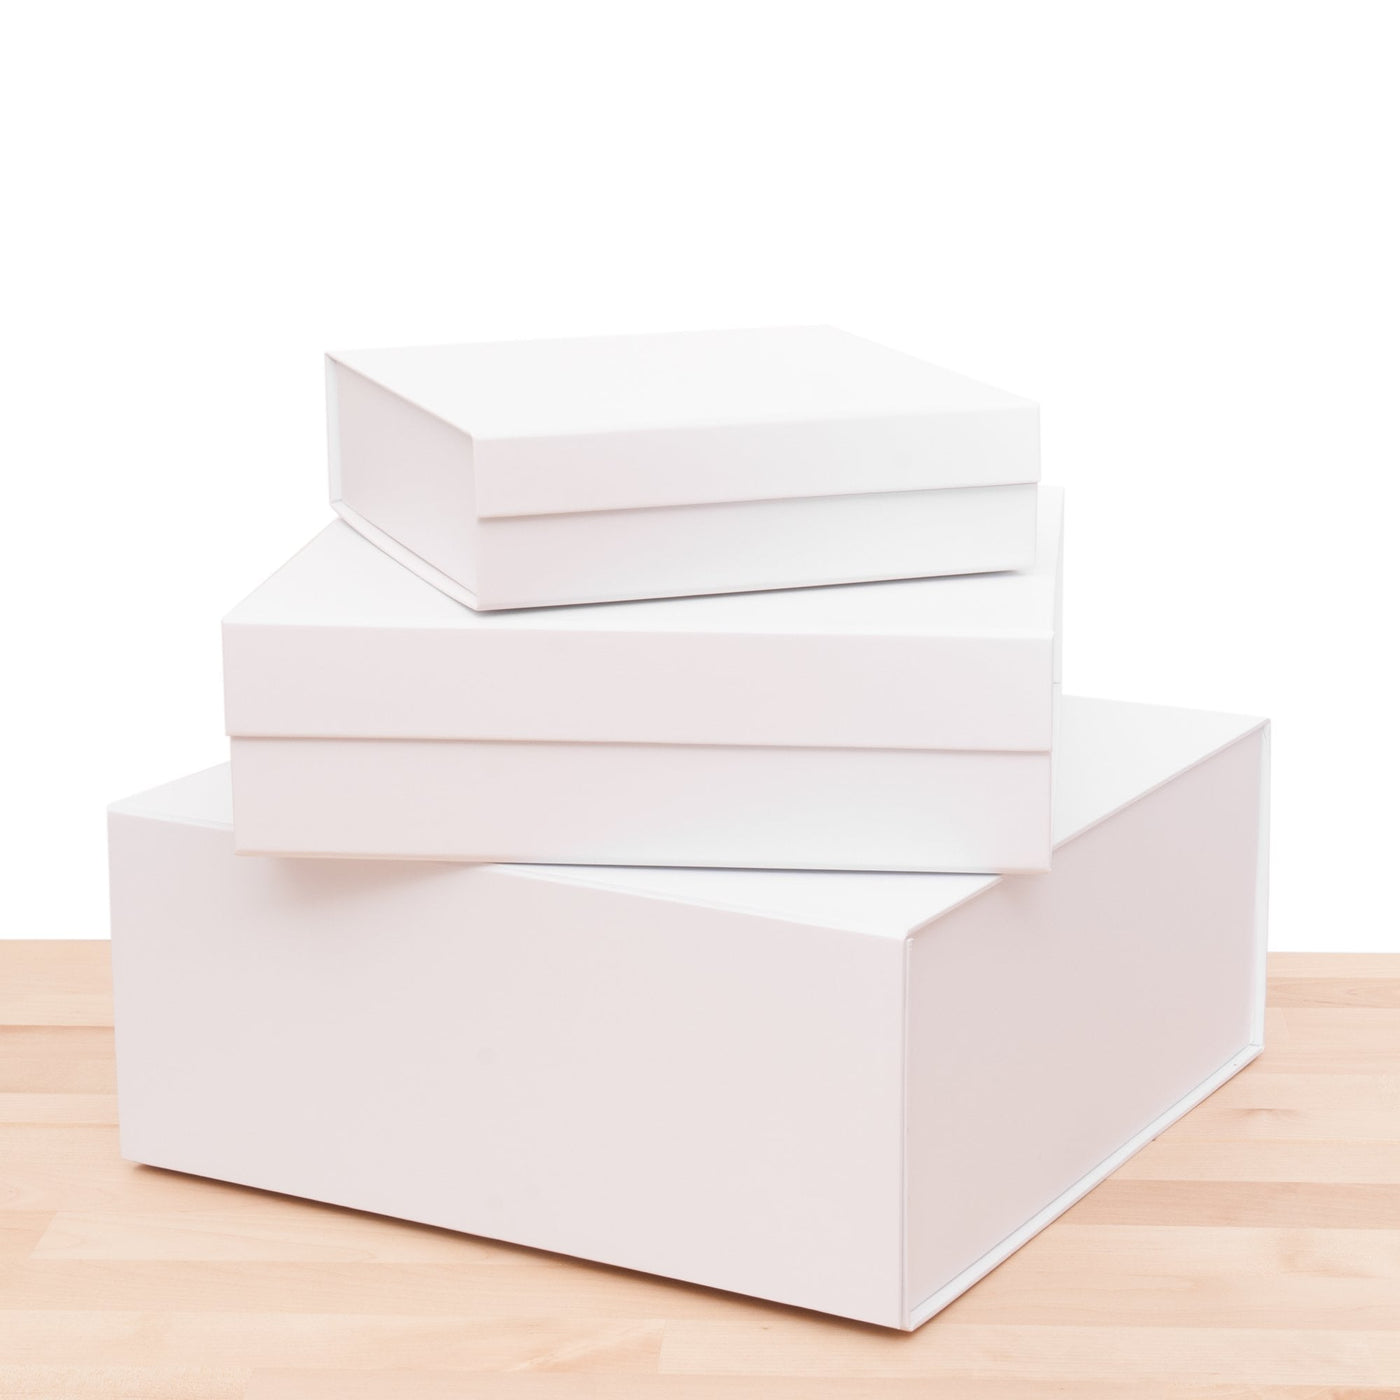 Luxury White Gift Box